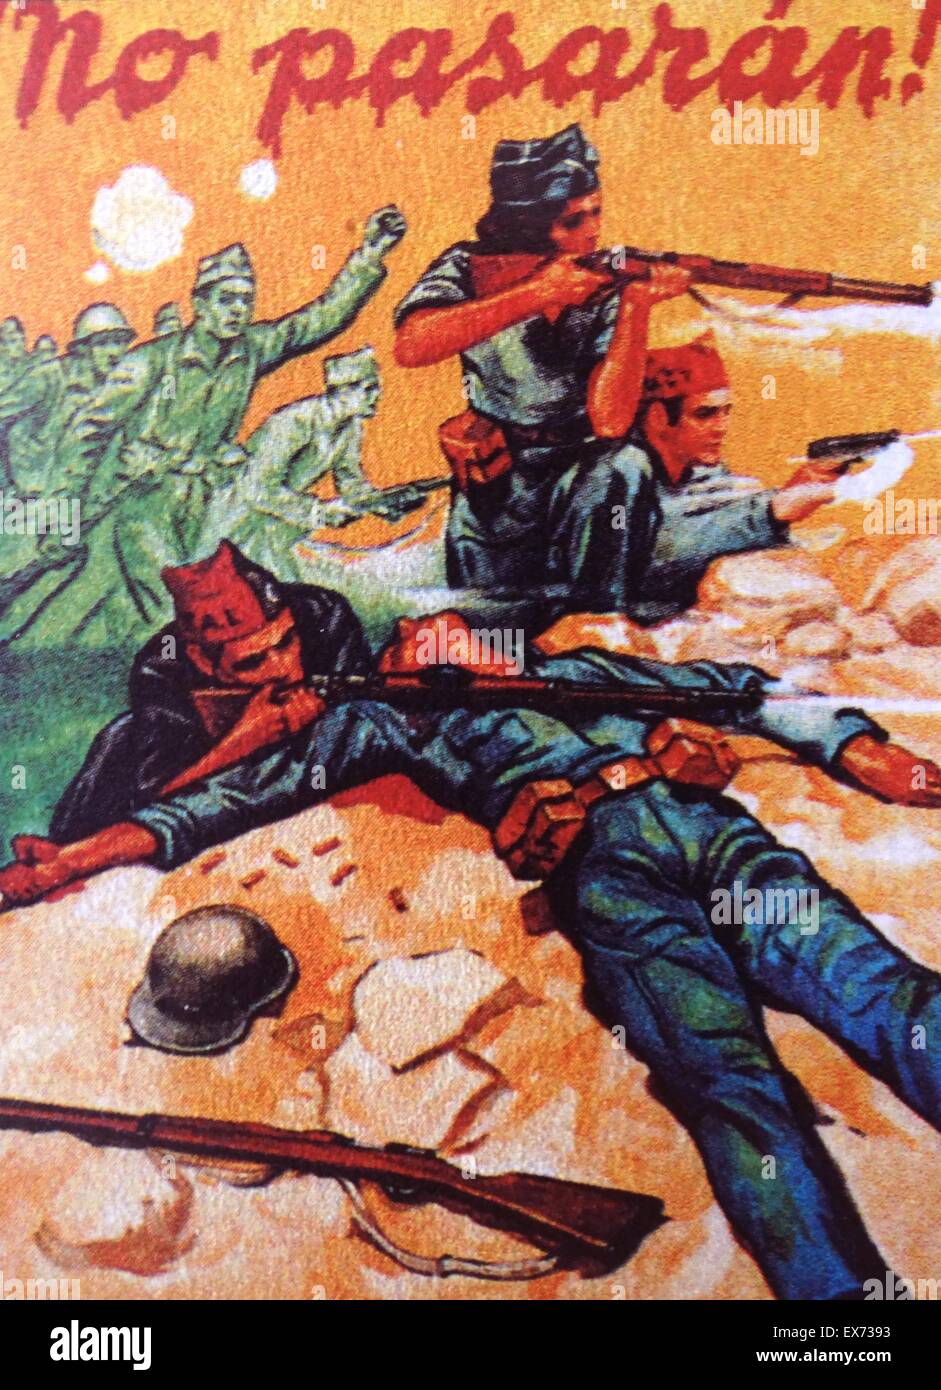 No Pasaran républicaine poster, pendant la guerre civile espagnole Banque D'Images